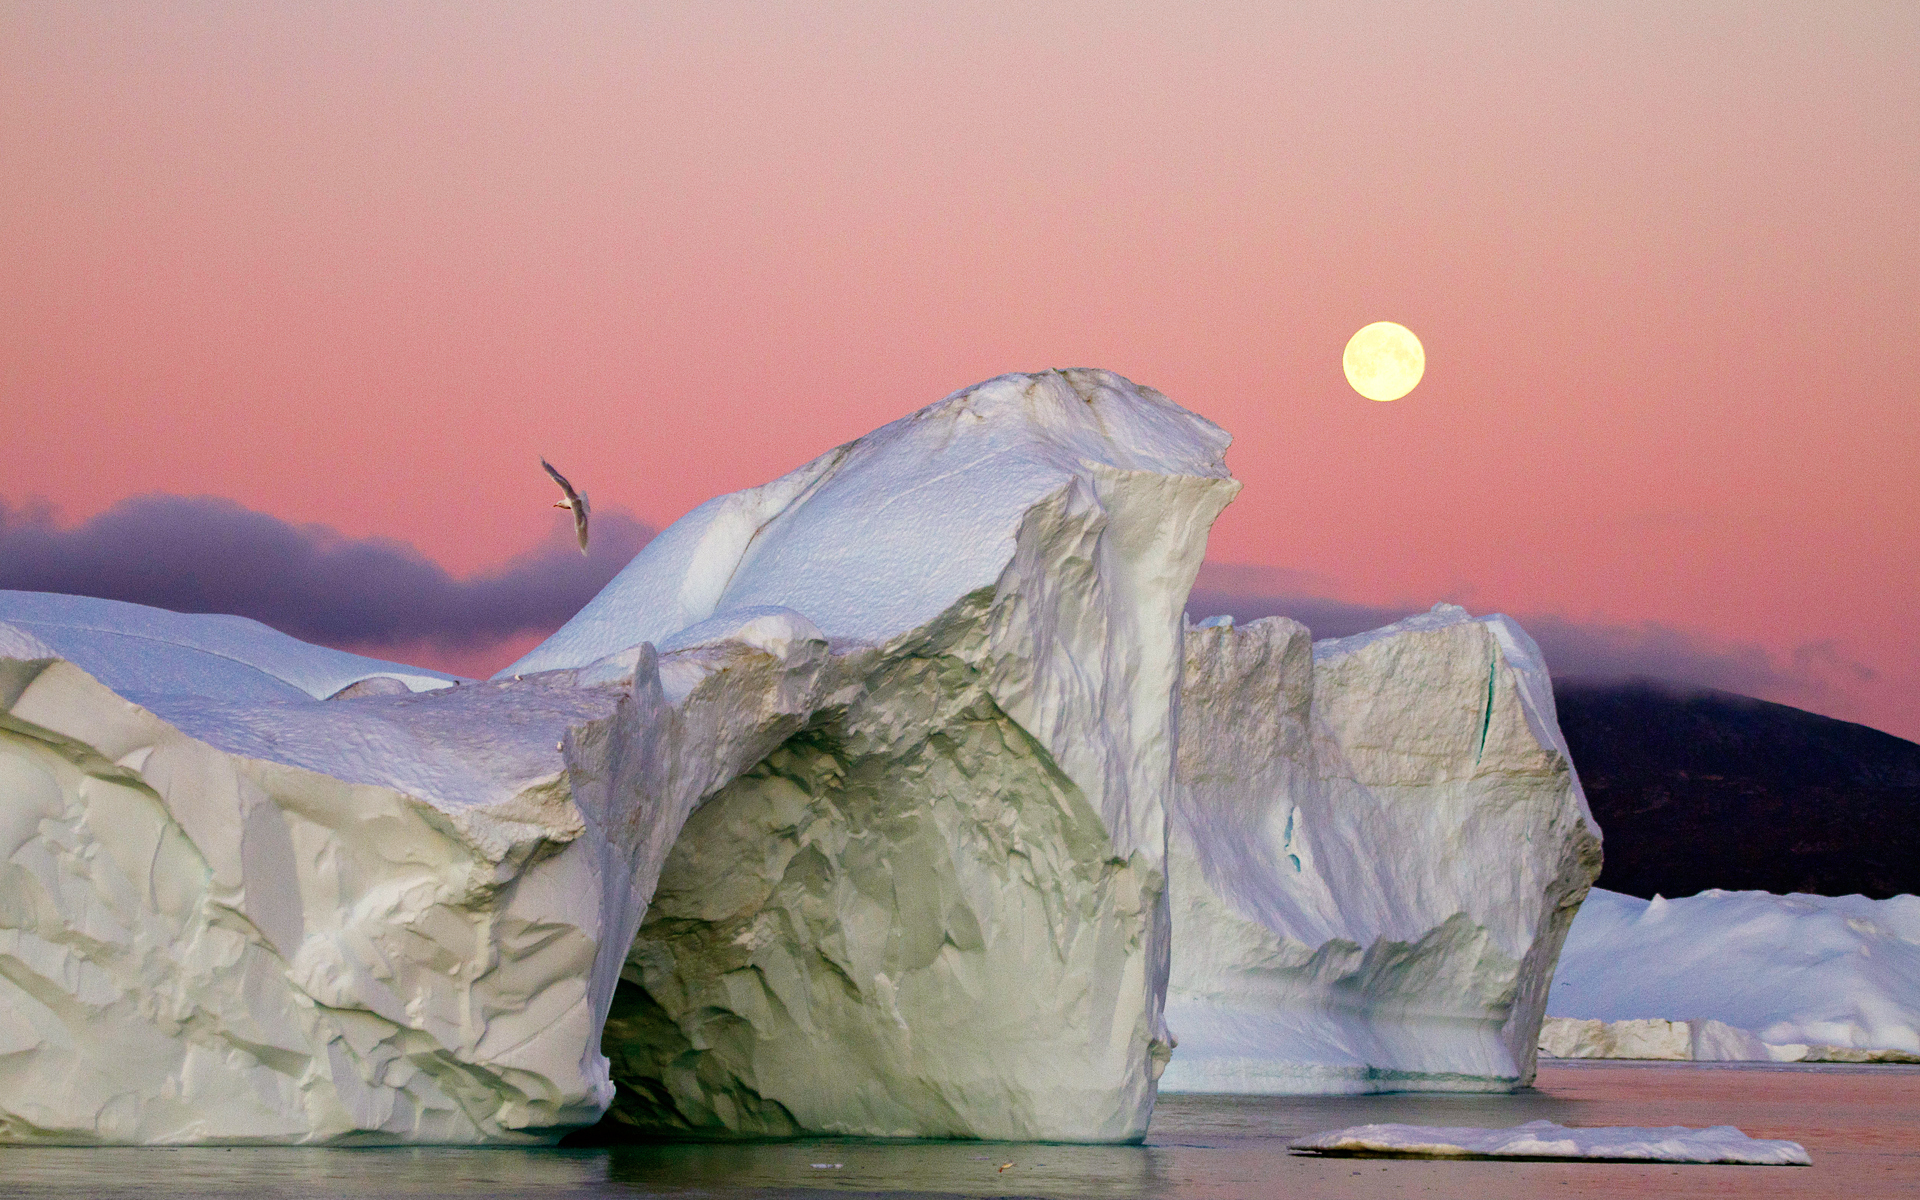 والپیپر جالب از غروب خورشید و عقاب زیبا در آسمان همراه با یخچال های طبیعی